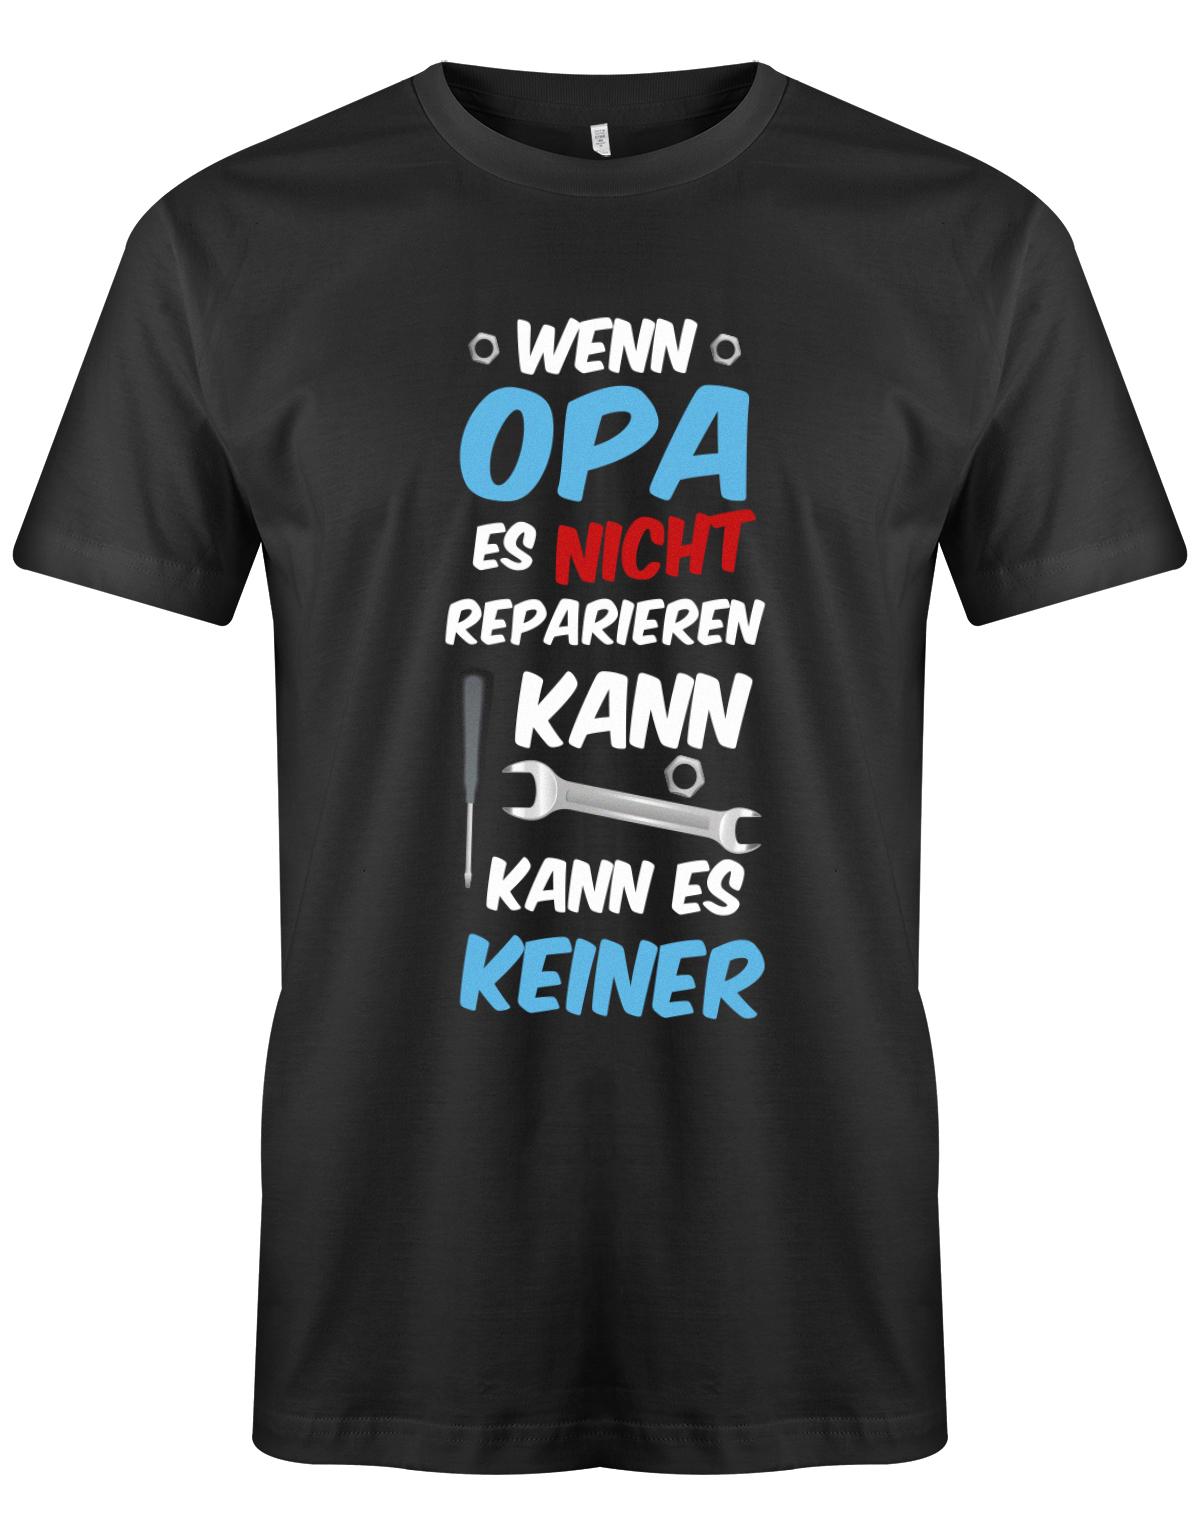 Opa T-Shirt – Wenn Opa es nicht reparieren kann, kann es keiner. SChwarz